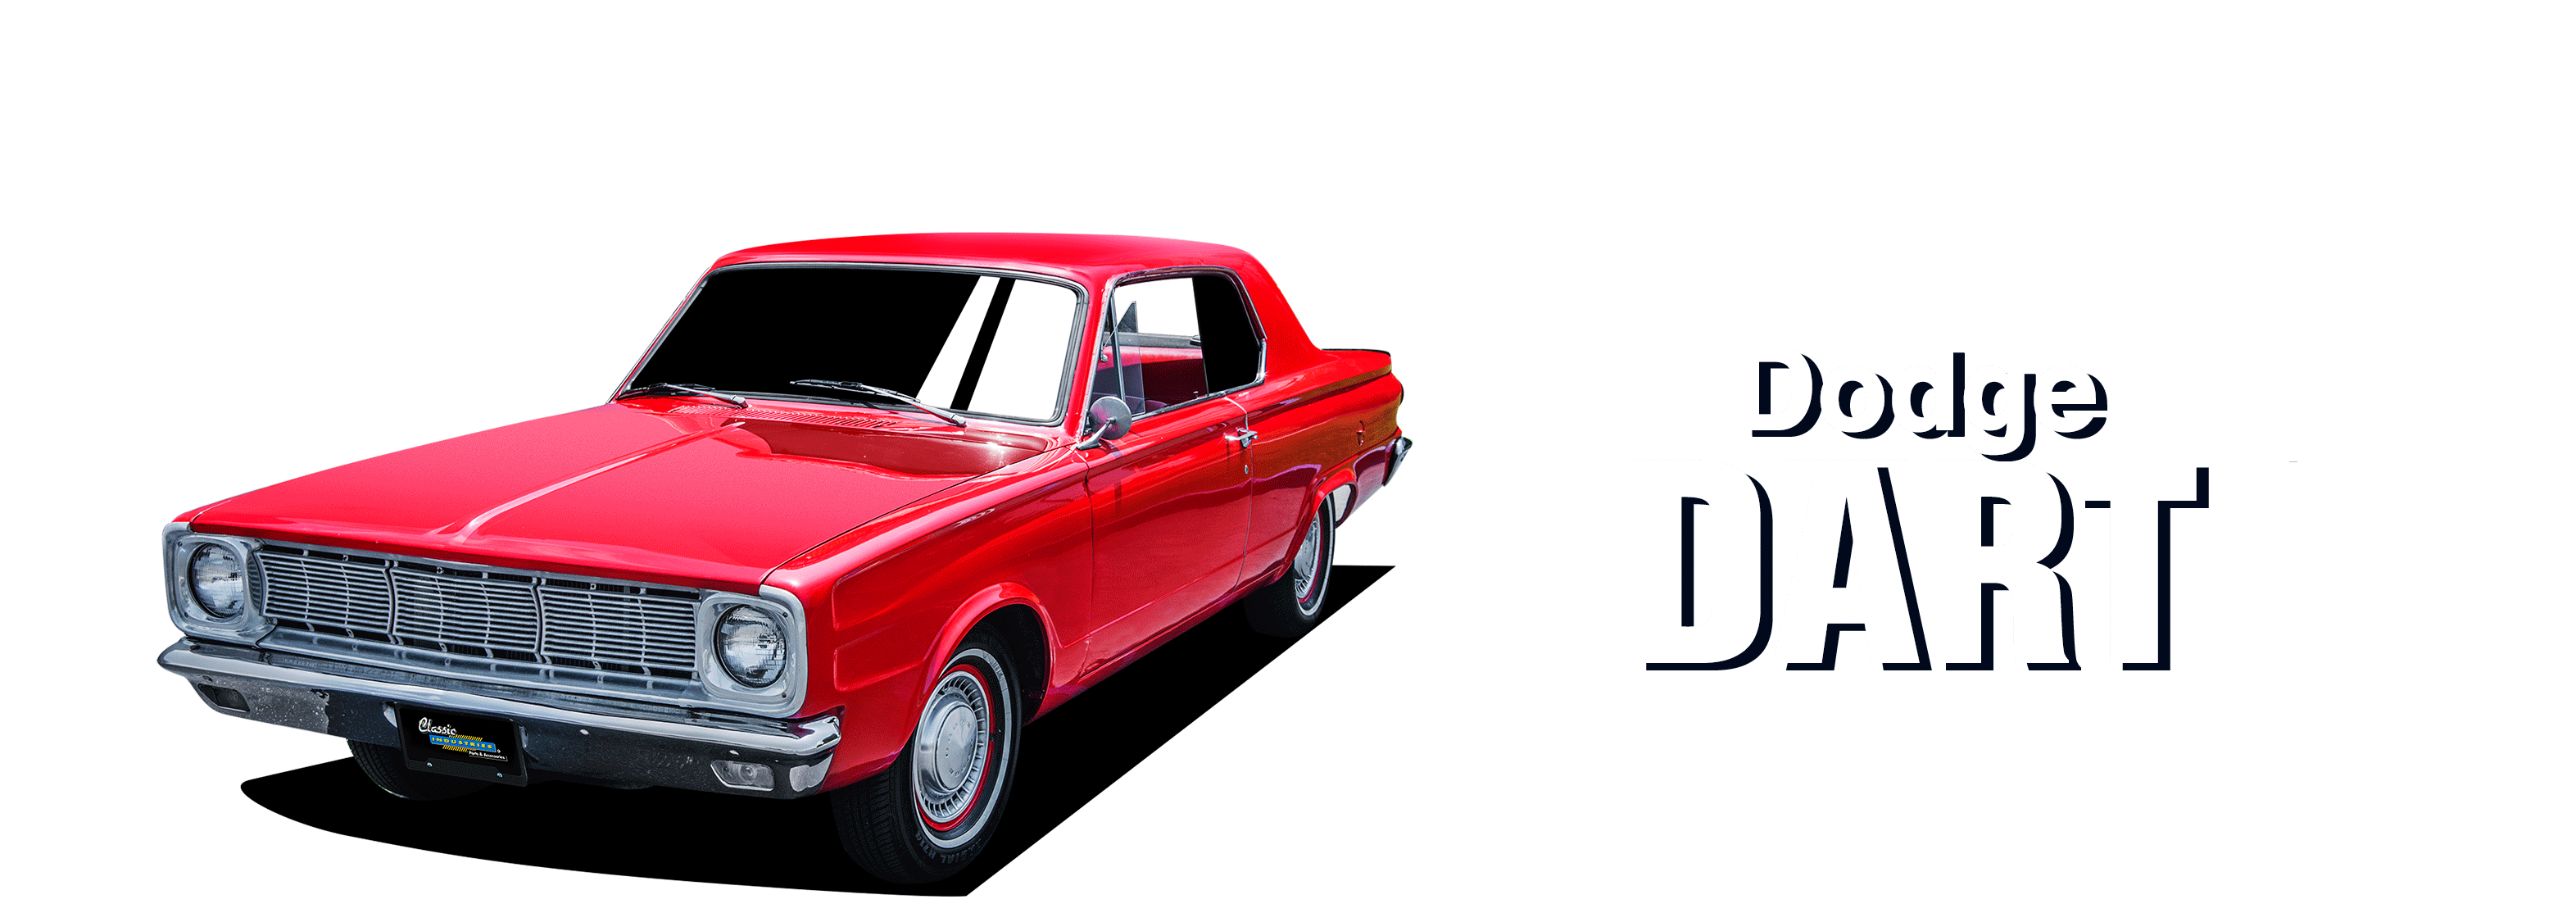 1963-1969 68ダッジダート/充電器/ポララプリマスフューリー3列アルミニウムラジエーターFor 1963-1969 68 Dodge Dart/Charger/Polara Ply